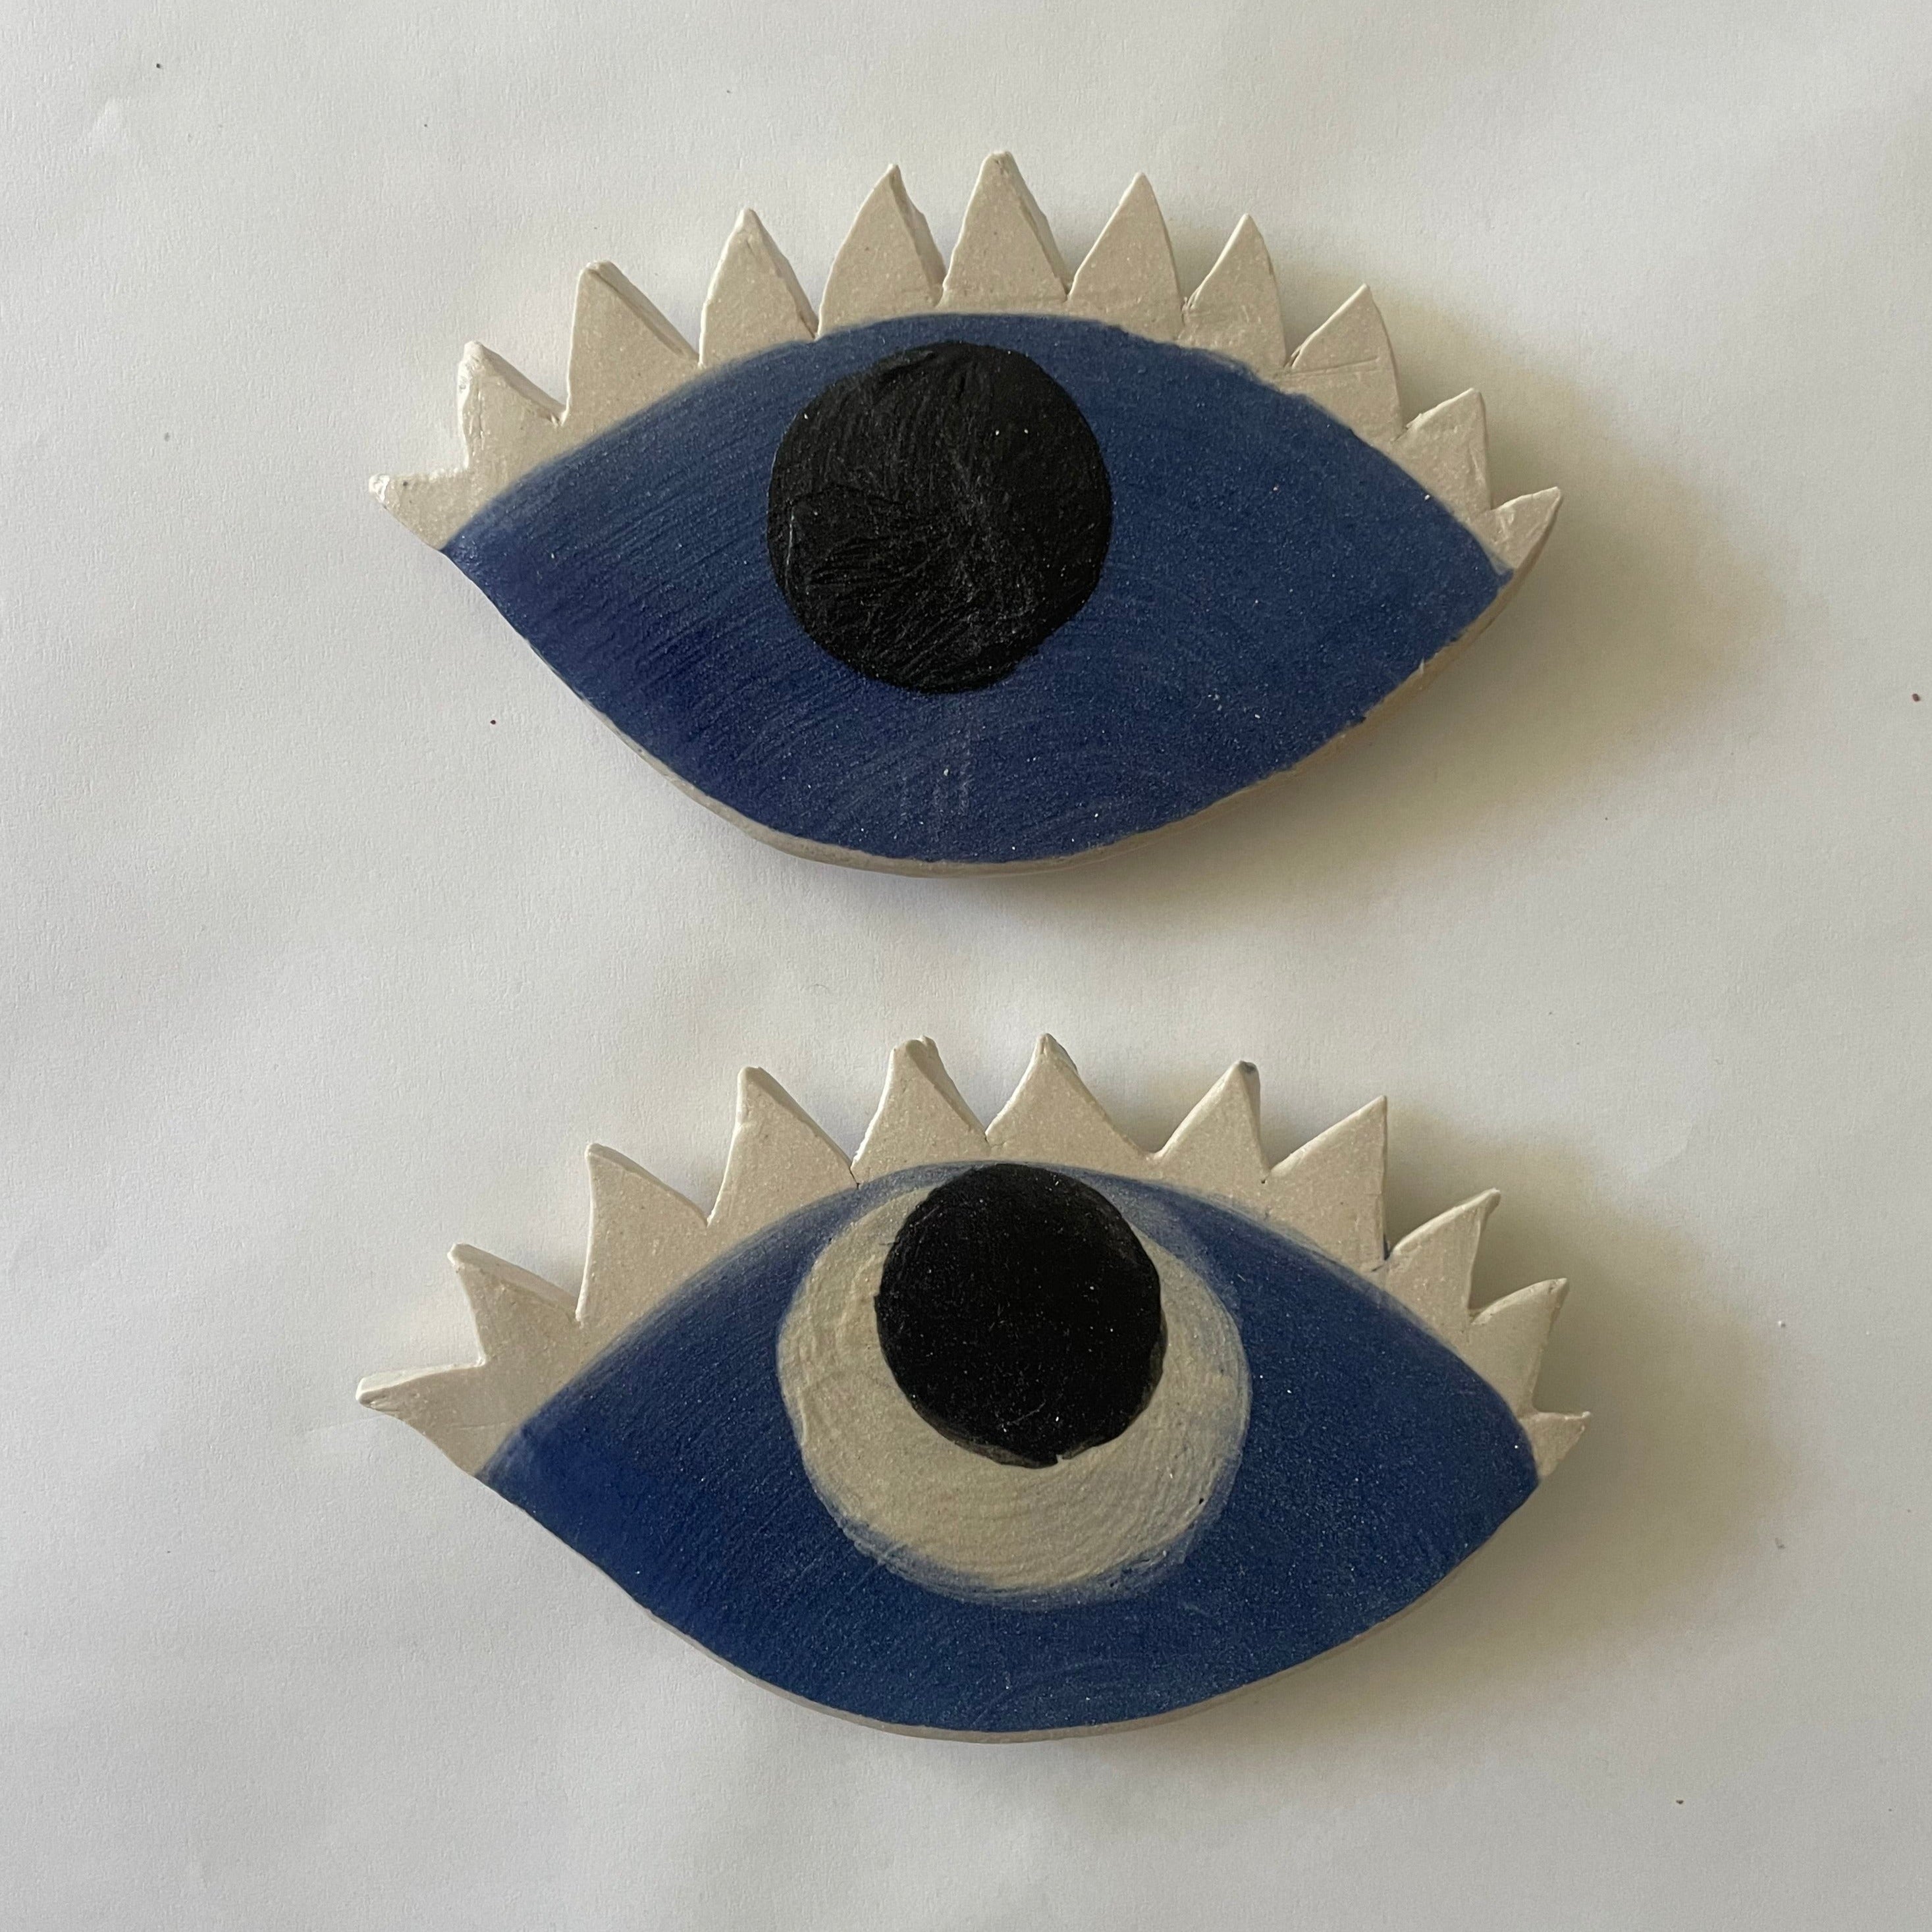 Ceramic evil eye